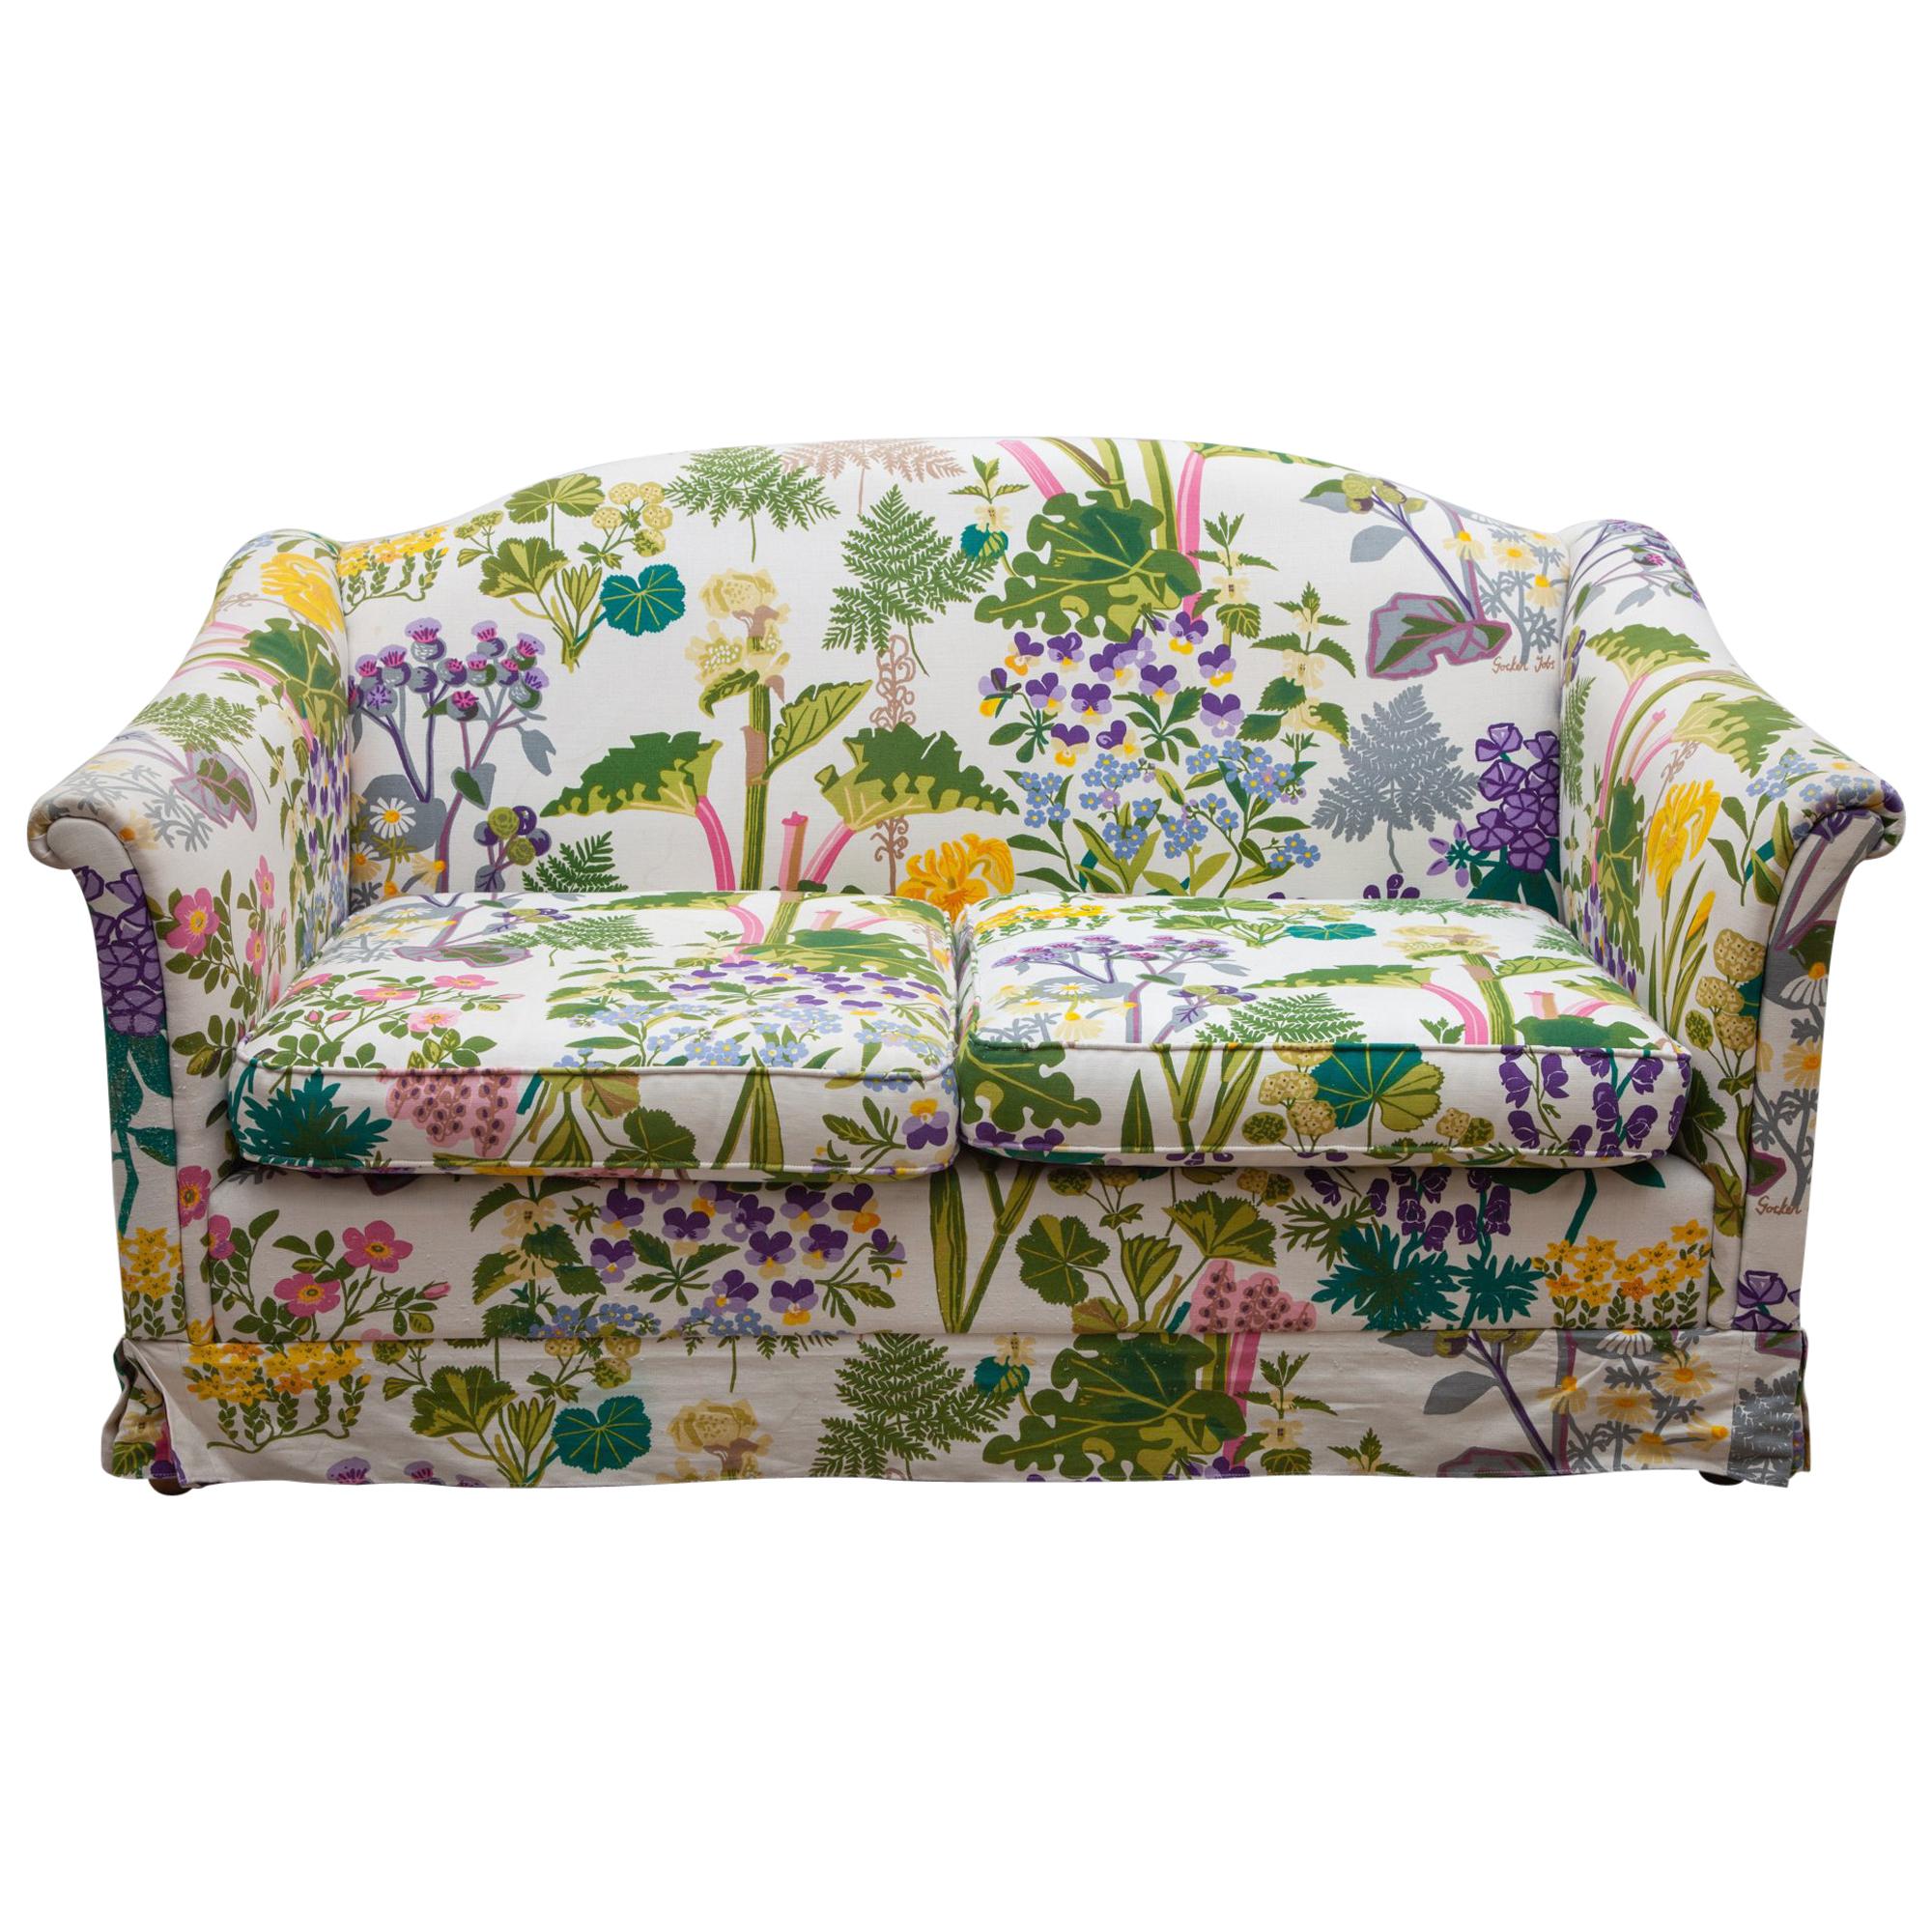 Floral and Nature Patterned Sofa, Bench Designed by Gocken Jobs, Sweden